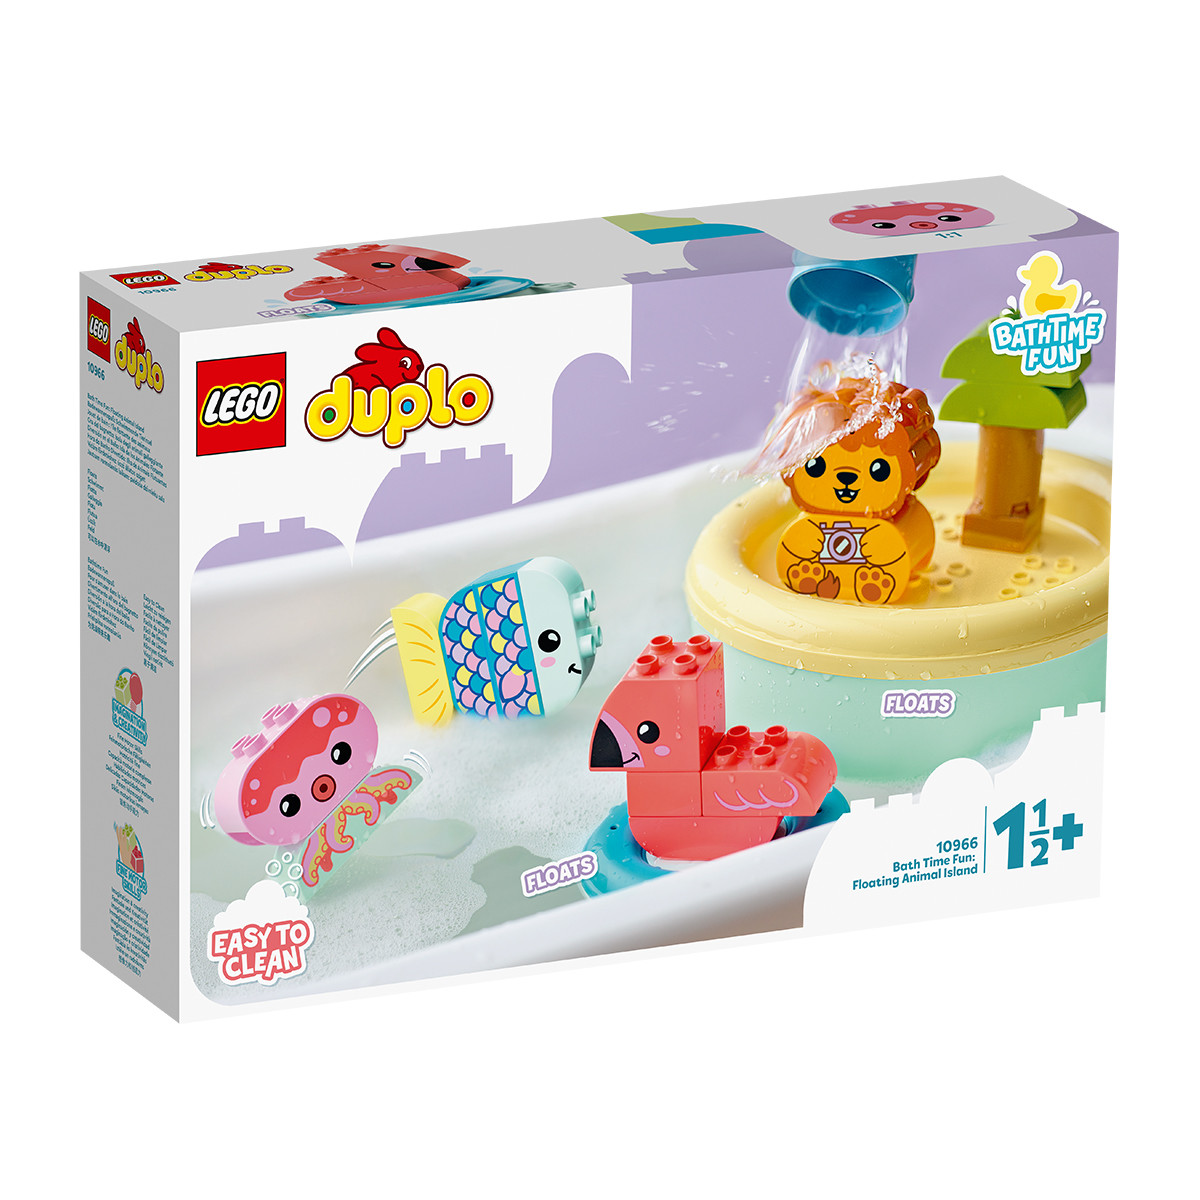 LEGO 乐高 得宝系列 10966 欢乐洗浴：可以漂浮的动物小岛